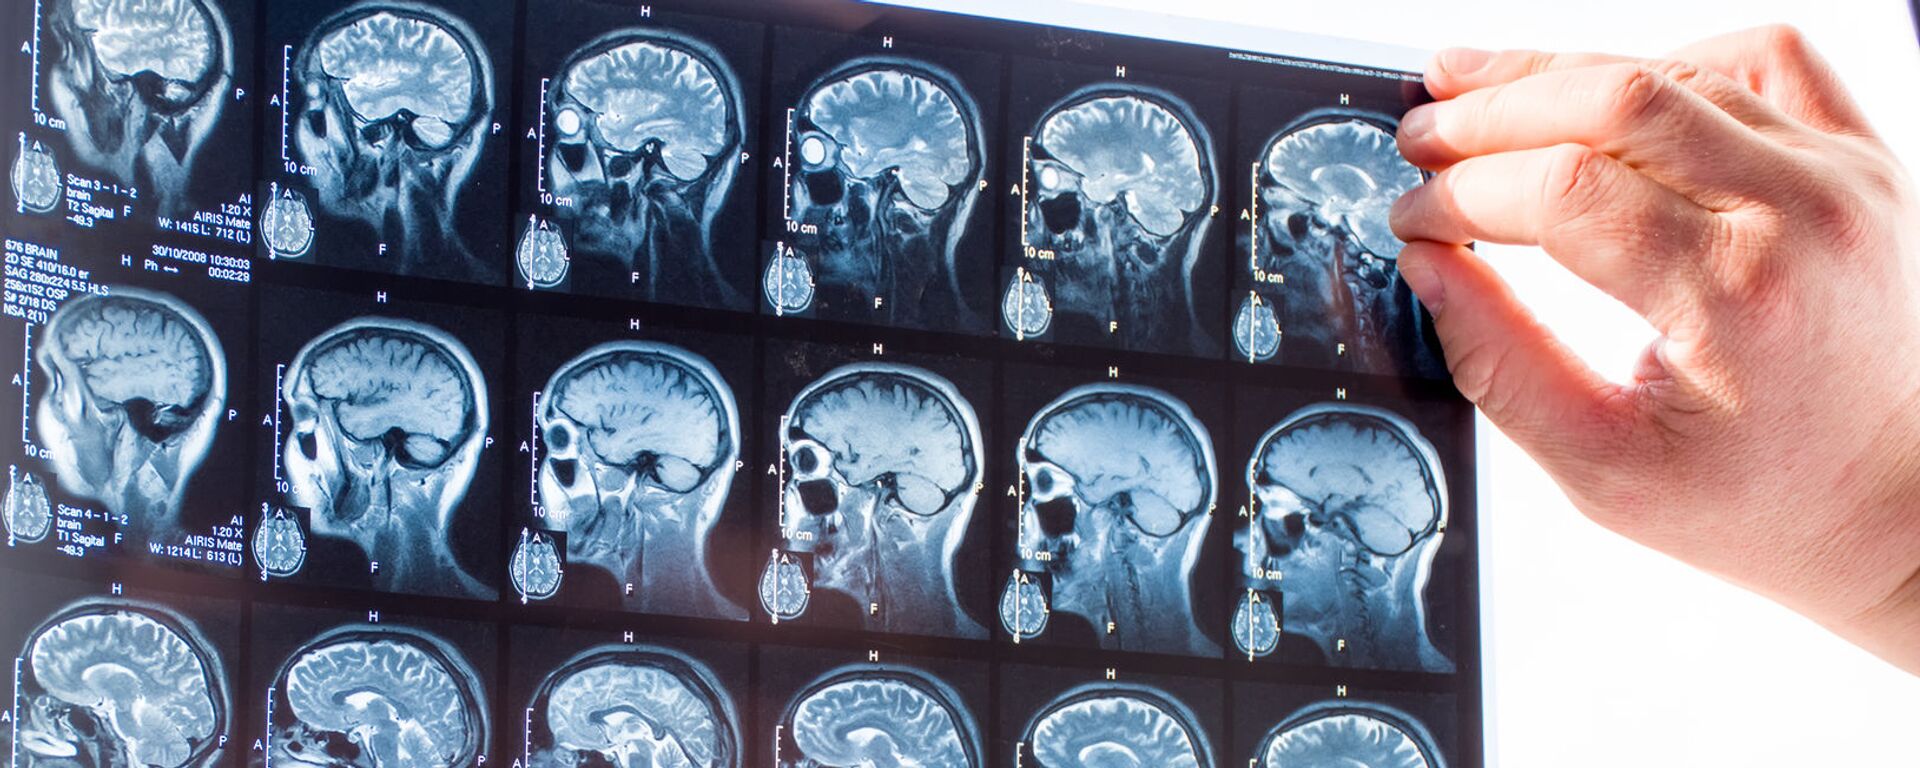 Врач изучает снимки головного мозга человека, архивное фото - Sputnik Lietuva, 1920, 05.09.2020